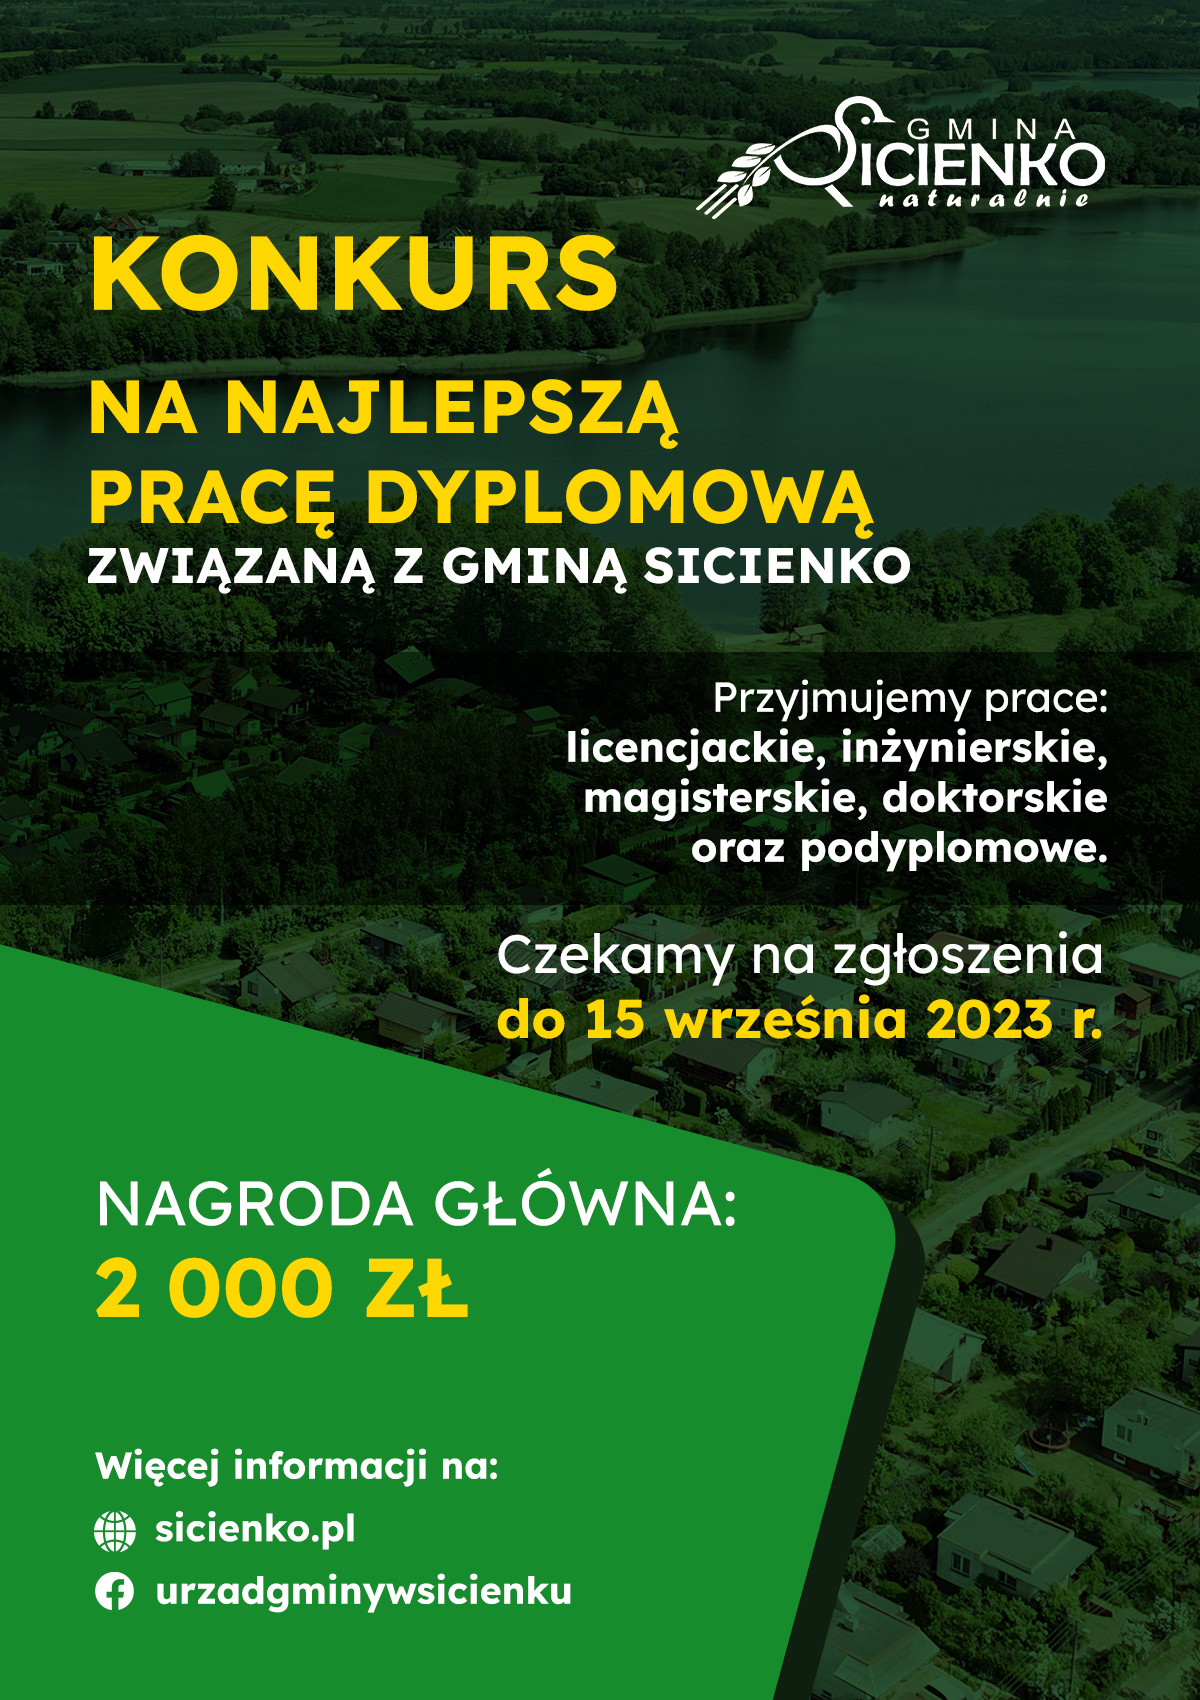 Konkurs na najlepszą pracę dyplomową o gminie Sicienko